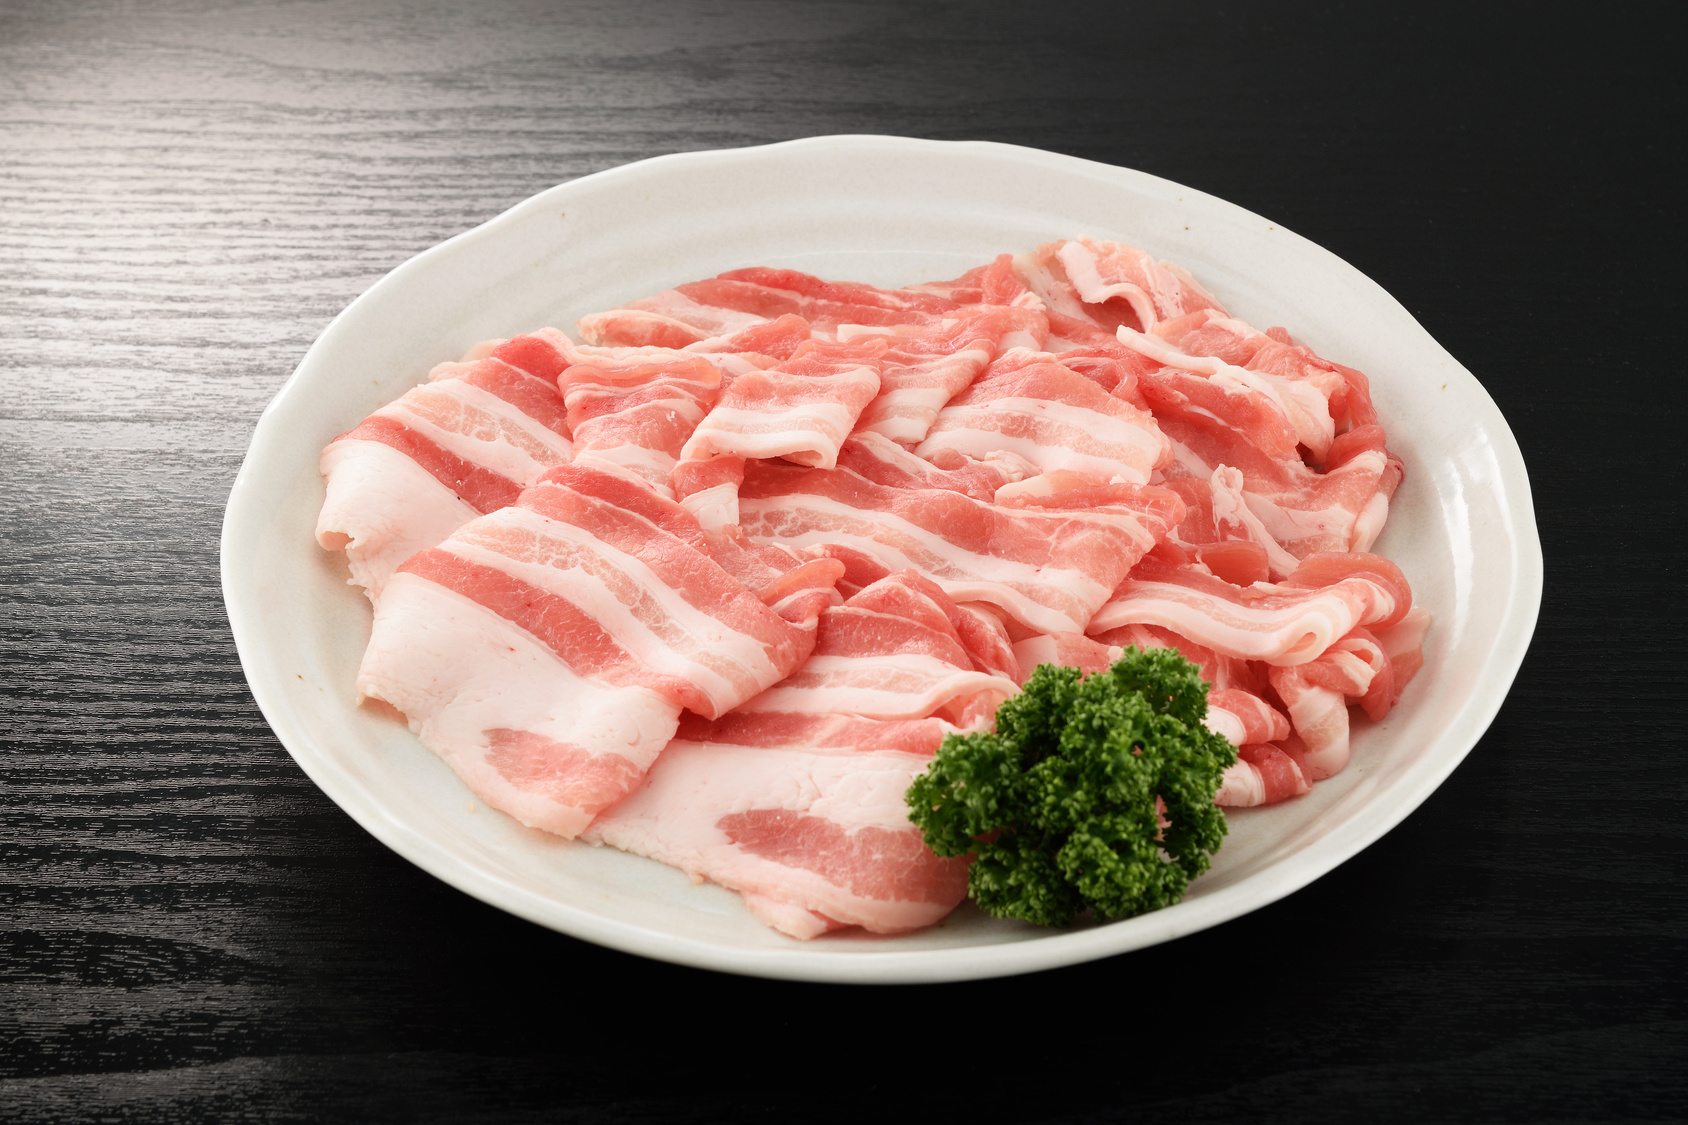 写真付きで解説 豚肉の冷凍保存方法と賞味期限 レシピ5選 急速冷凍 による高品質な業務用食材通販マーケット